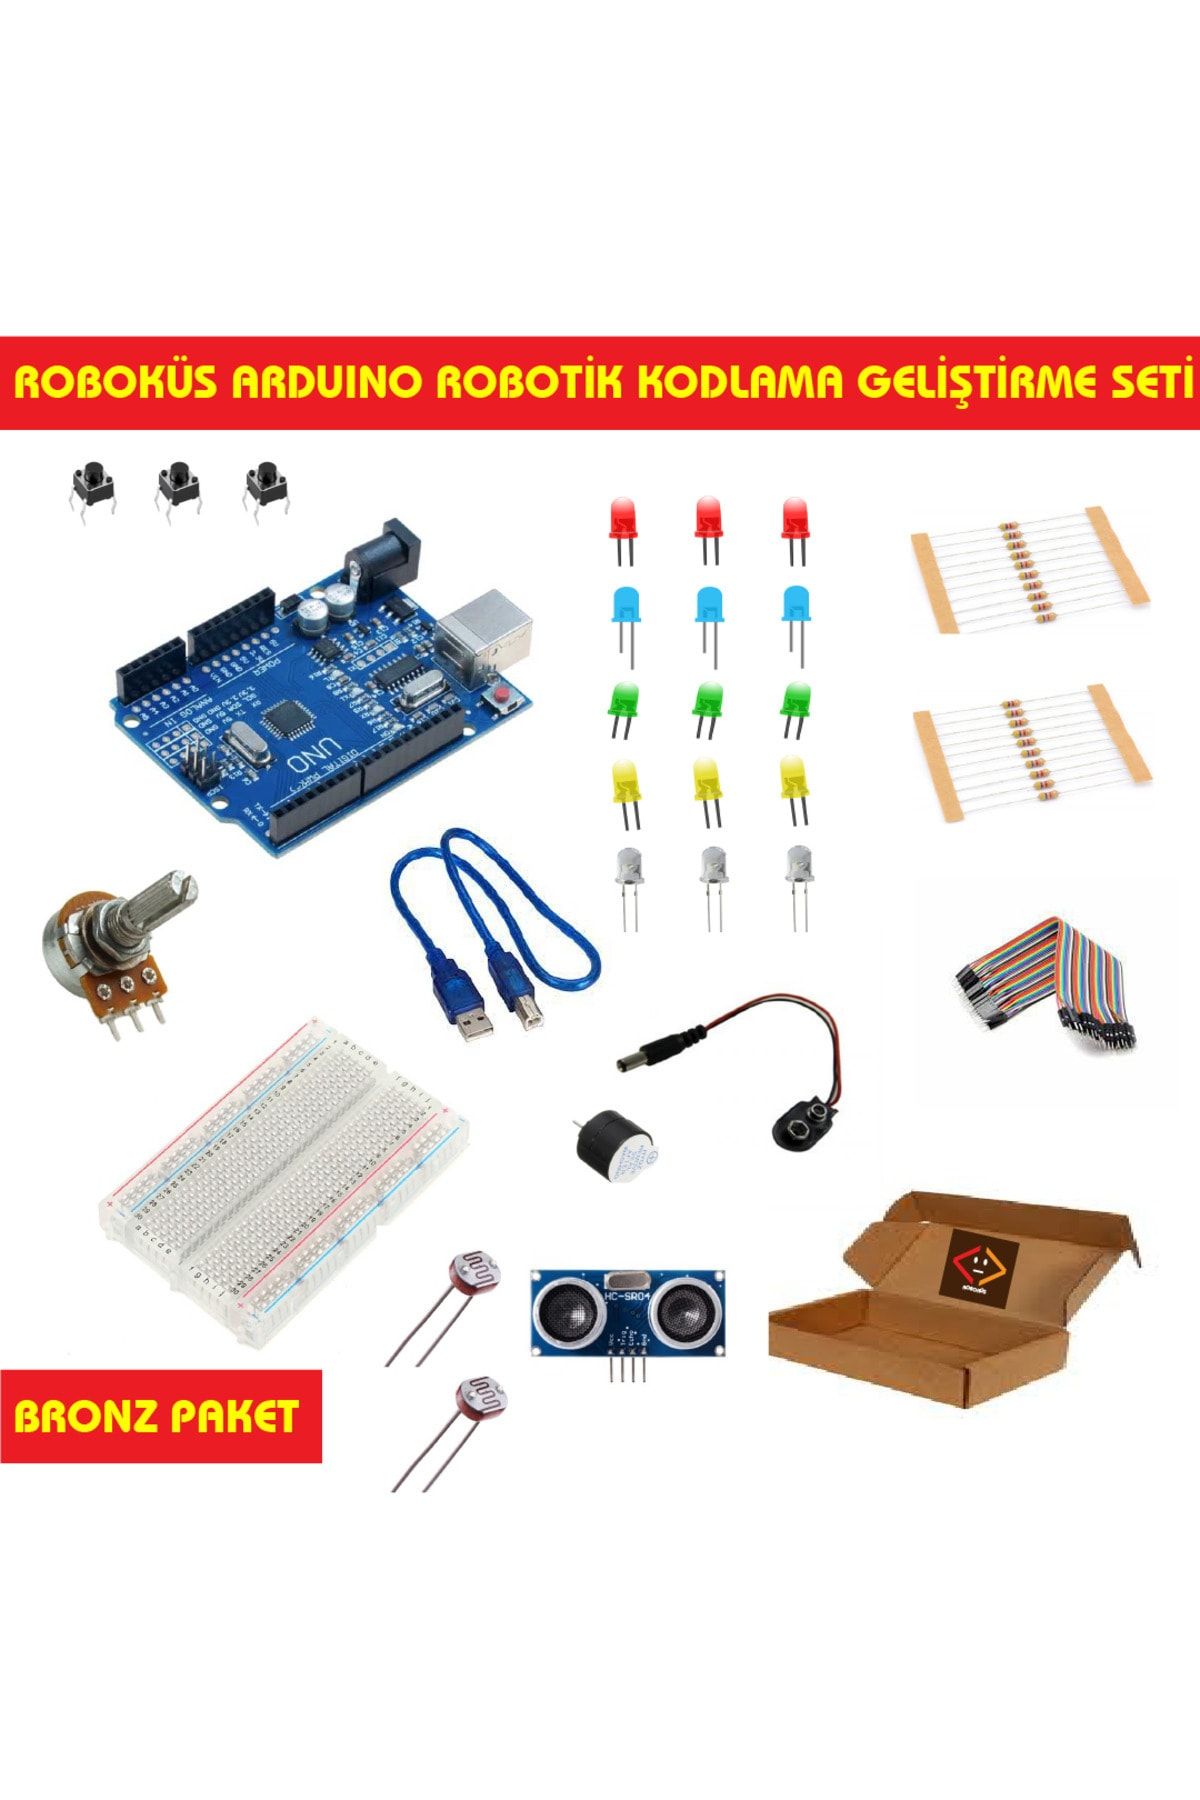 ROBOKÜS Arduino Robotik Kodlama Geliştirme Seti - Bronz Paket